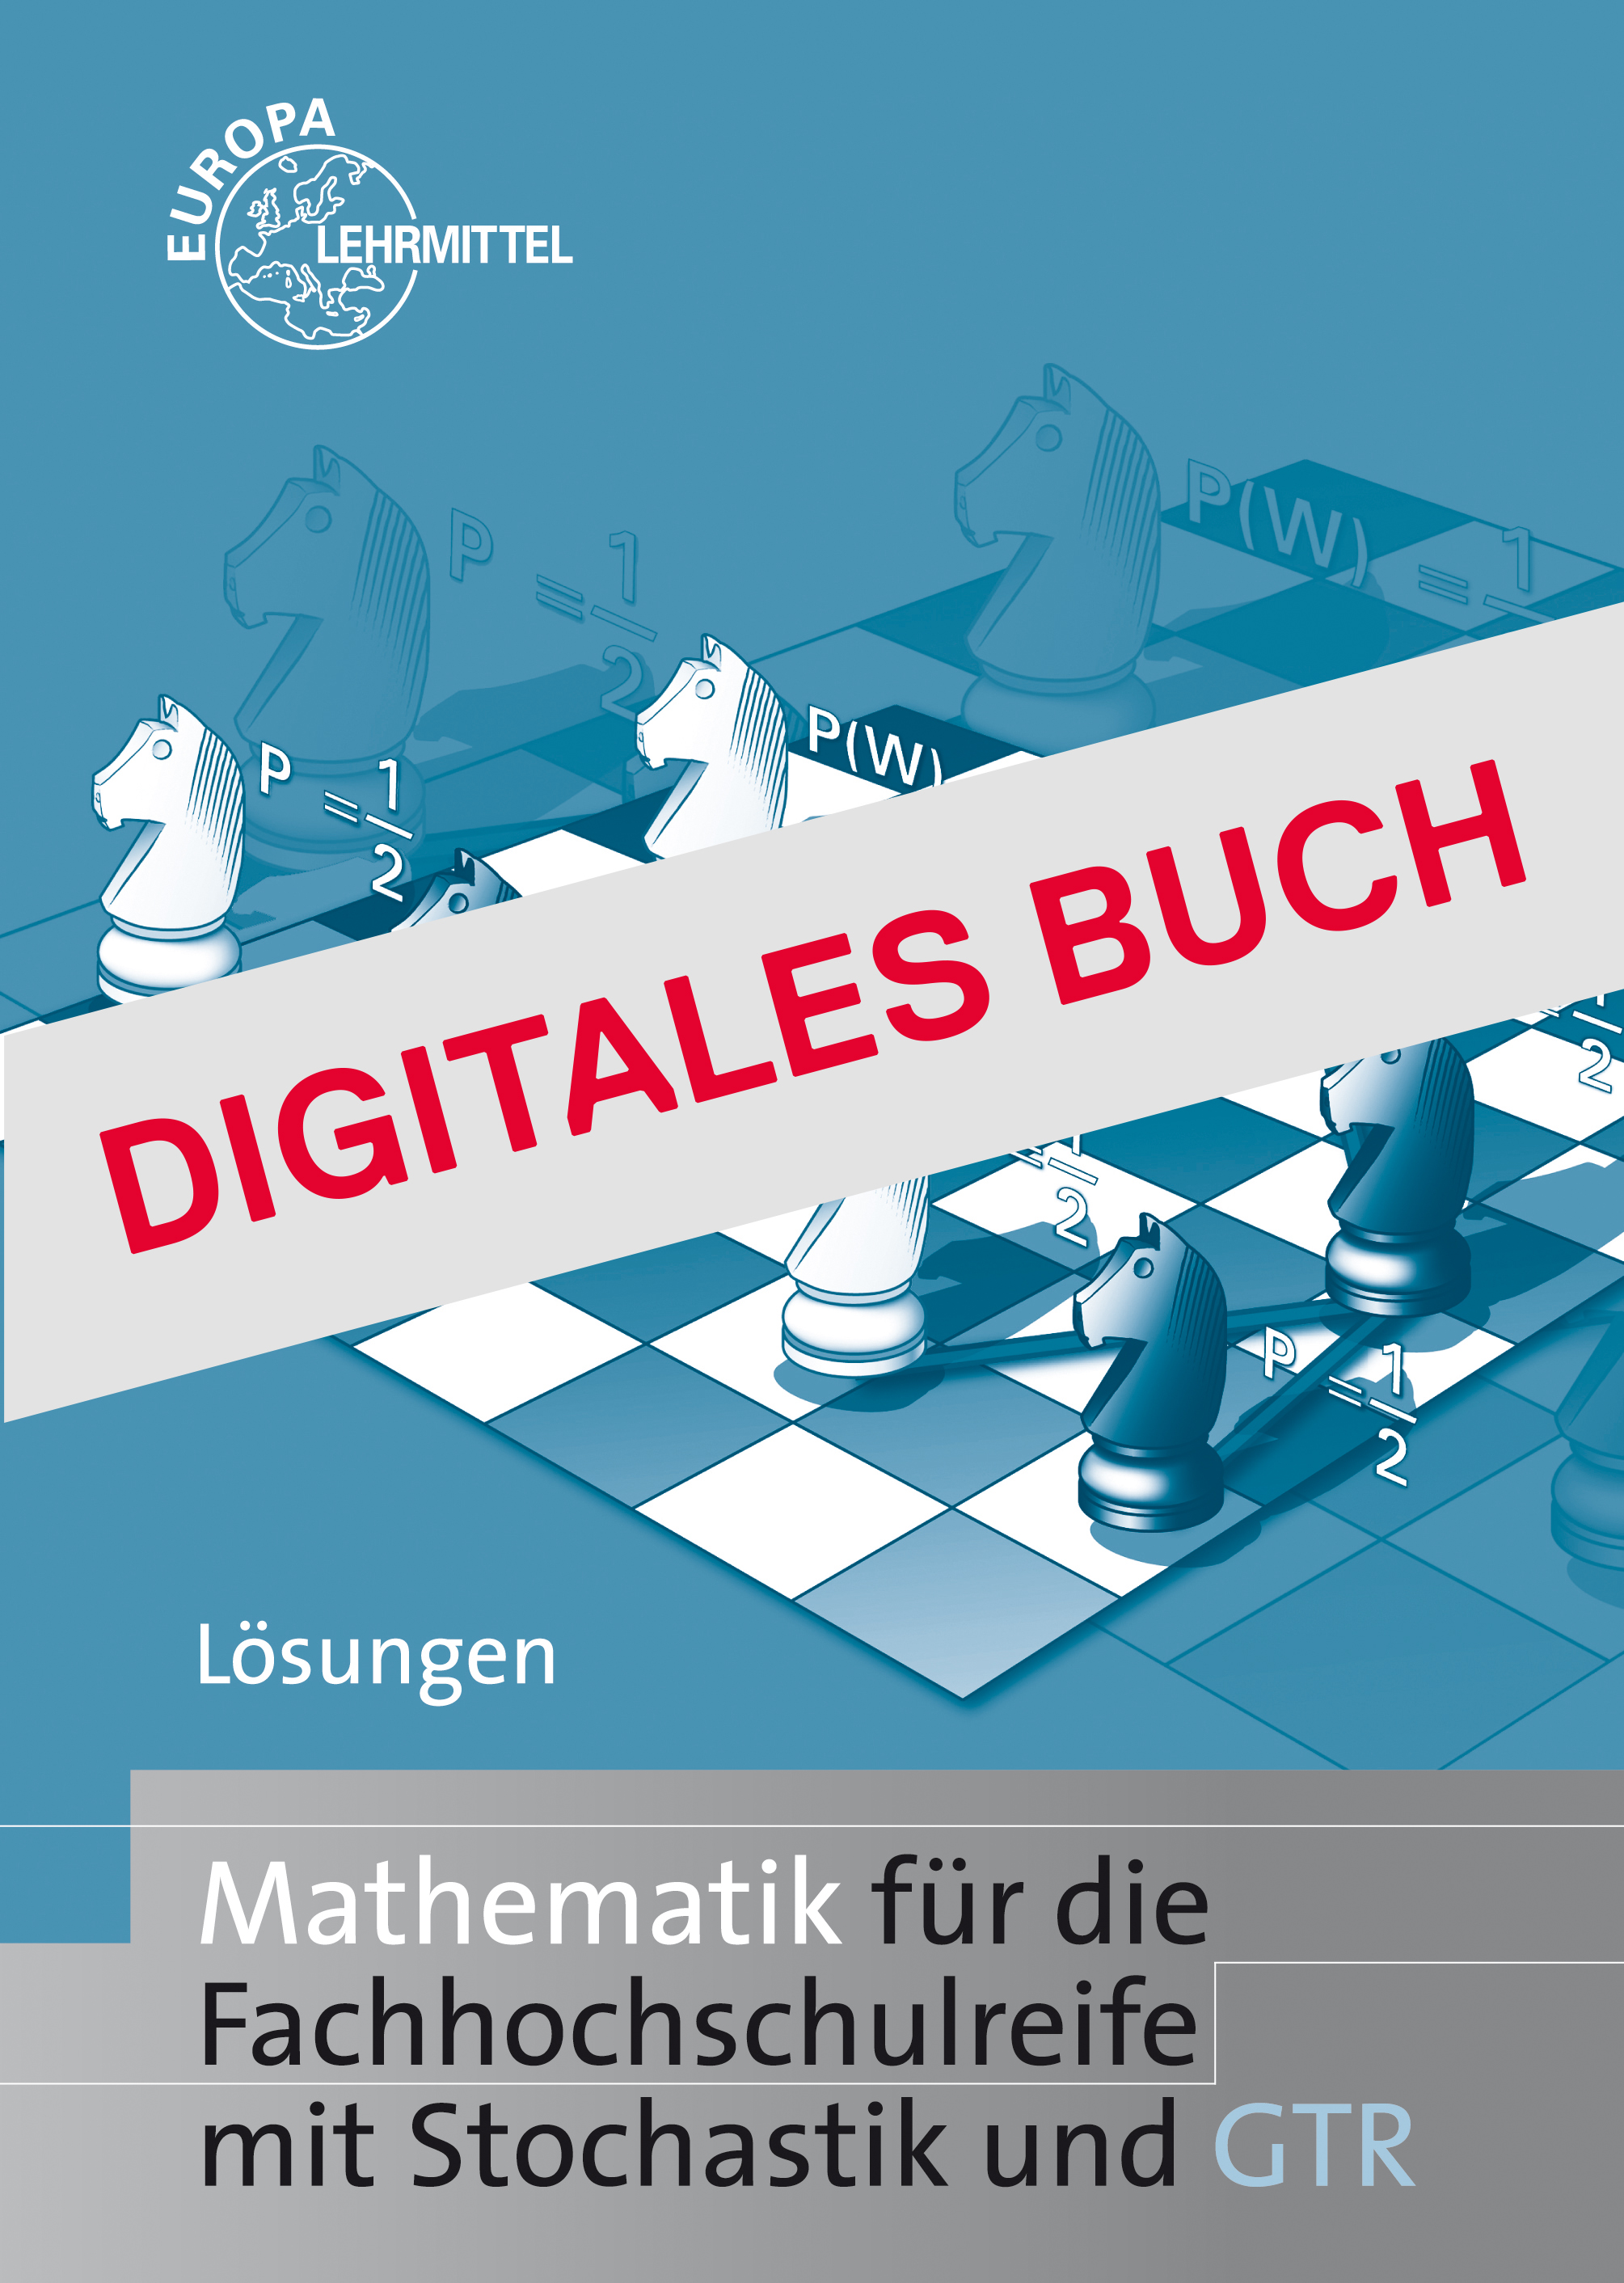 Lösungen Mathematik für die Fachhochschulreife mit Stochastik - Digitales Buch